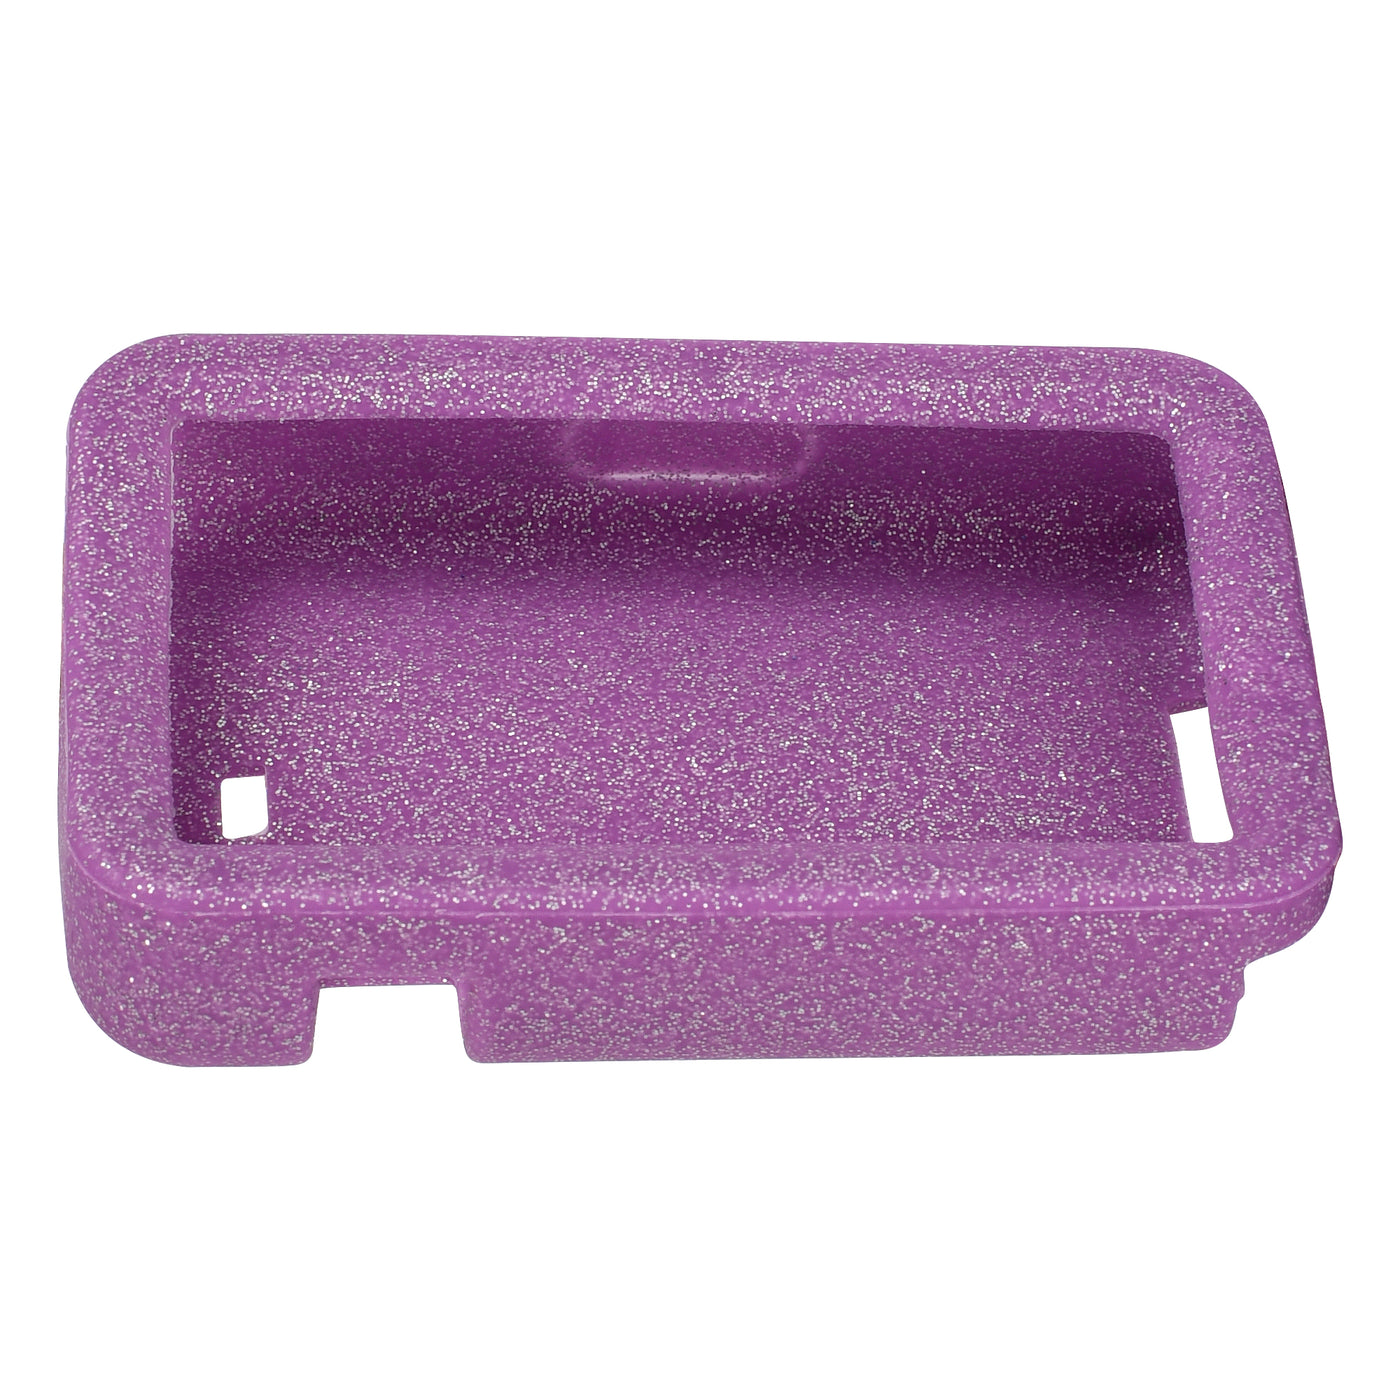 Tandem t:slim X2 - Purple Glitter